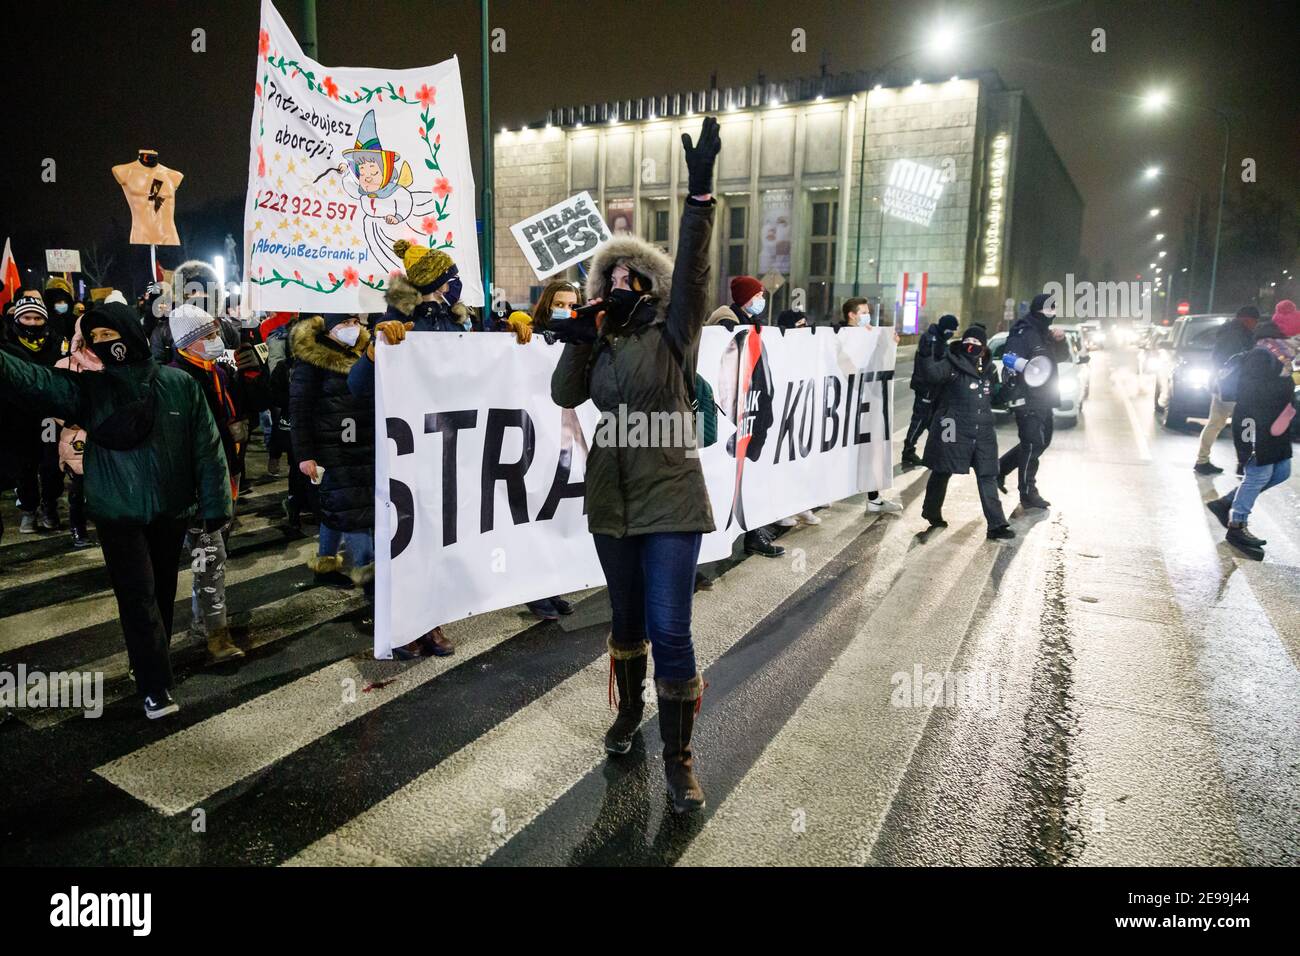 Demonstranten marschierten während der Demonstrationen durch einen Fußgängerüberweg.nach dem Urteil des polnischen Verfassungsgerichts, das am 27th. Januar in Kraft trat, um eines der restriktivsten Anti-Abtreibungsgesetze in Europa umzusetzen, gingen Hunderte von Polen in allen größeren Städten auf die Straße. Die Proteste wurden vom Frauenstreik organisiert. Stockfoto